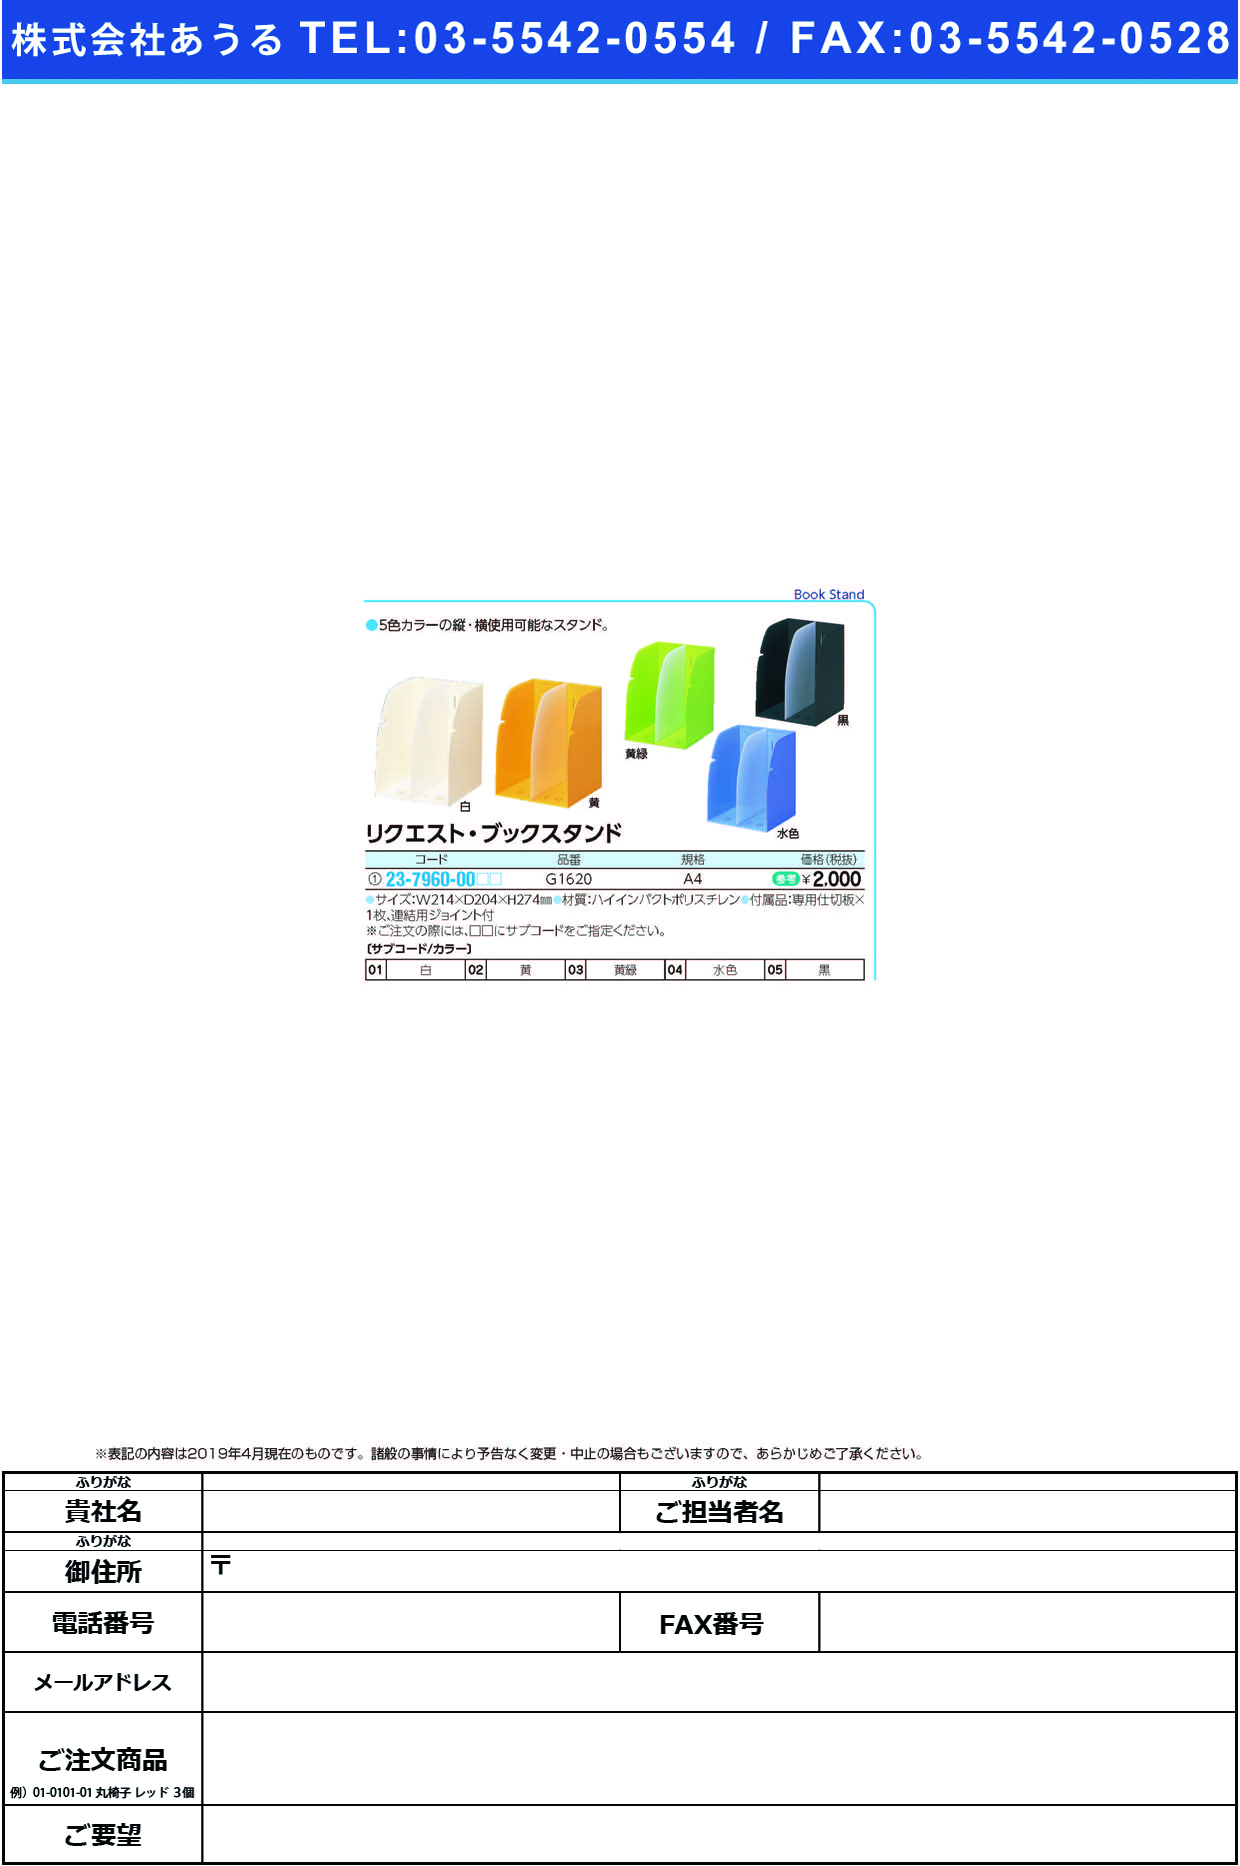 (23-7960-00)リクエストブックスタンド G1620(A4) ﾘｸｴｽﾄﾌﾞｯｸｽﾀﾝﾄﾞ 黄緑(ＬＩＨＩＴＬＡＢ．)【1個単位】【2019年カタログ商品】